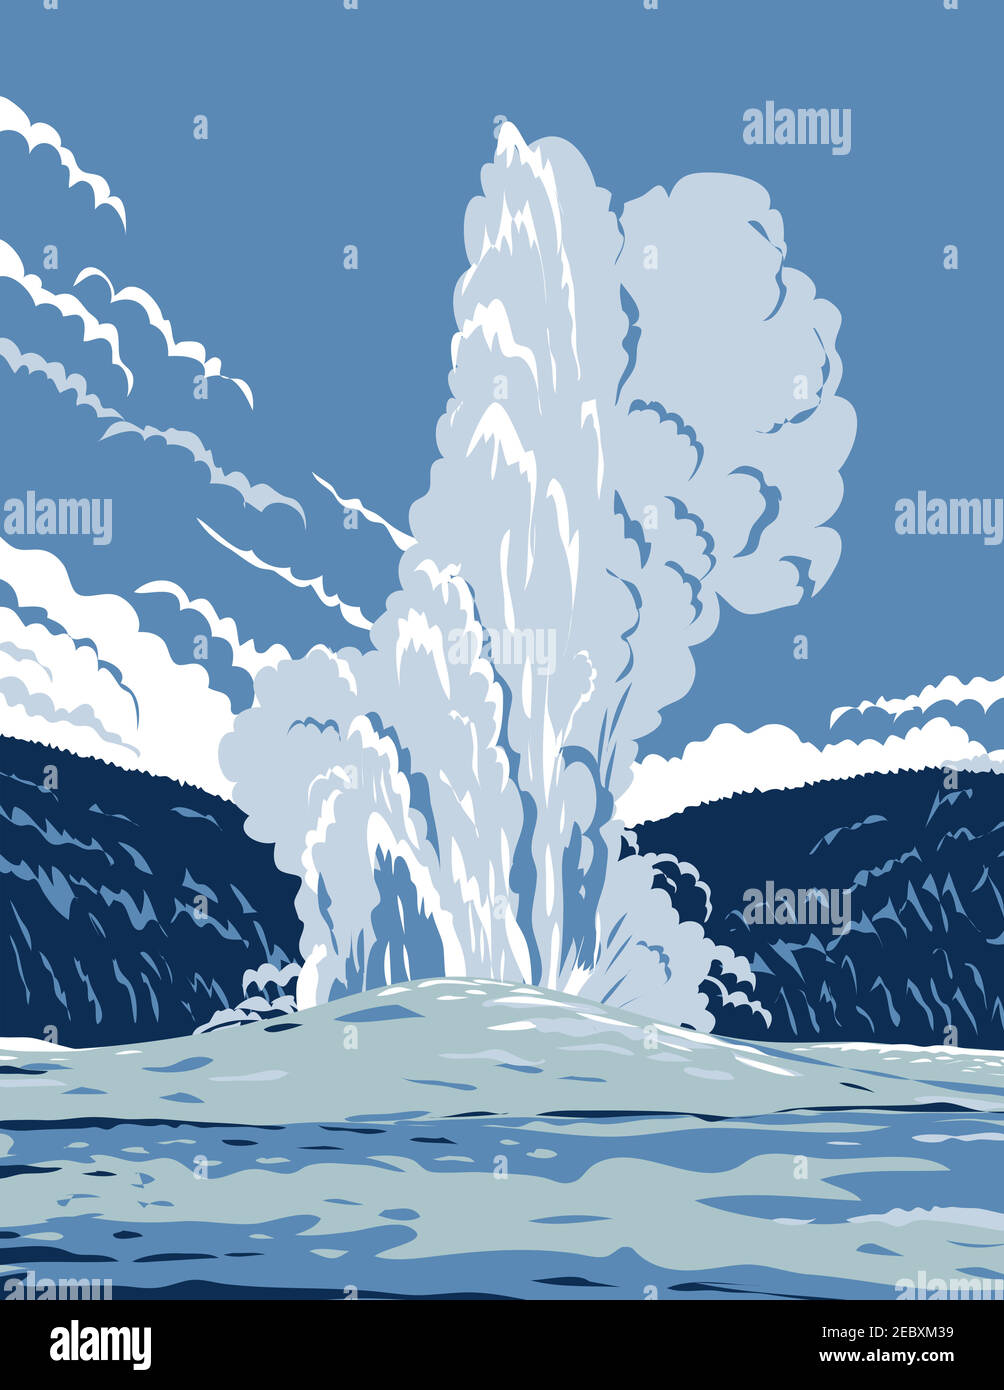 WPA affiche art de l'Old Faithful, un geyser de cône dans le parc national de Yellowstone dans le Wyoming, Etats-Unis d'Amérique fait en travaux projet administrati Illustration de Vecteur